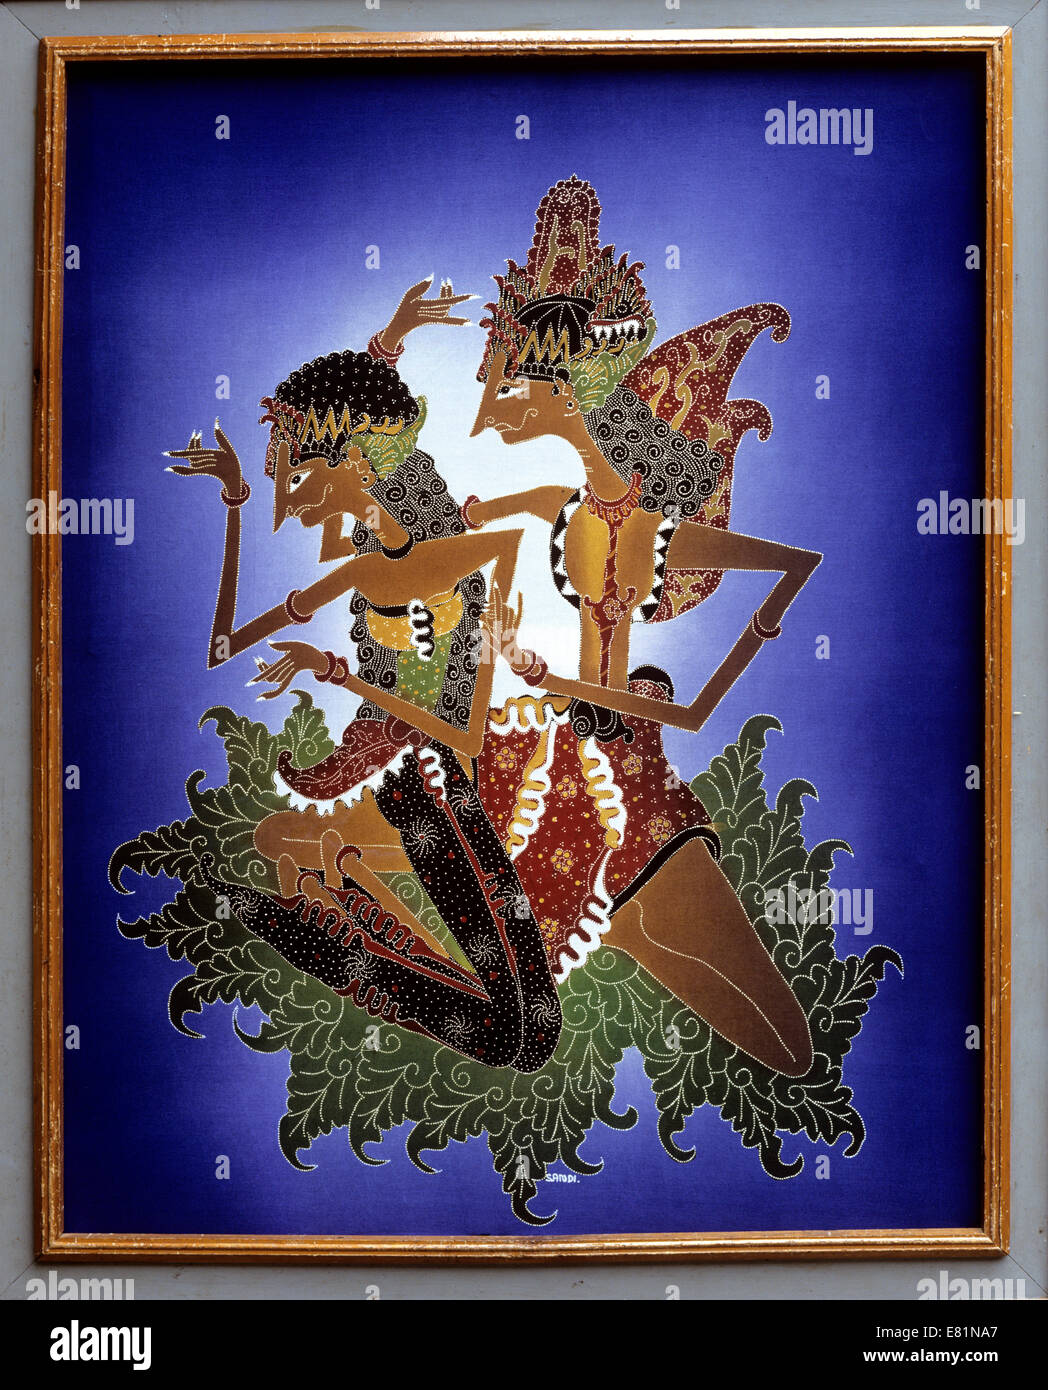 L'art balinais, la peinture batik, figures de la mythologie balinaise, Ubud, Bali, Indonésie Banque D'Images